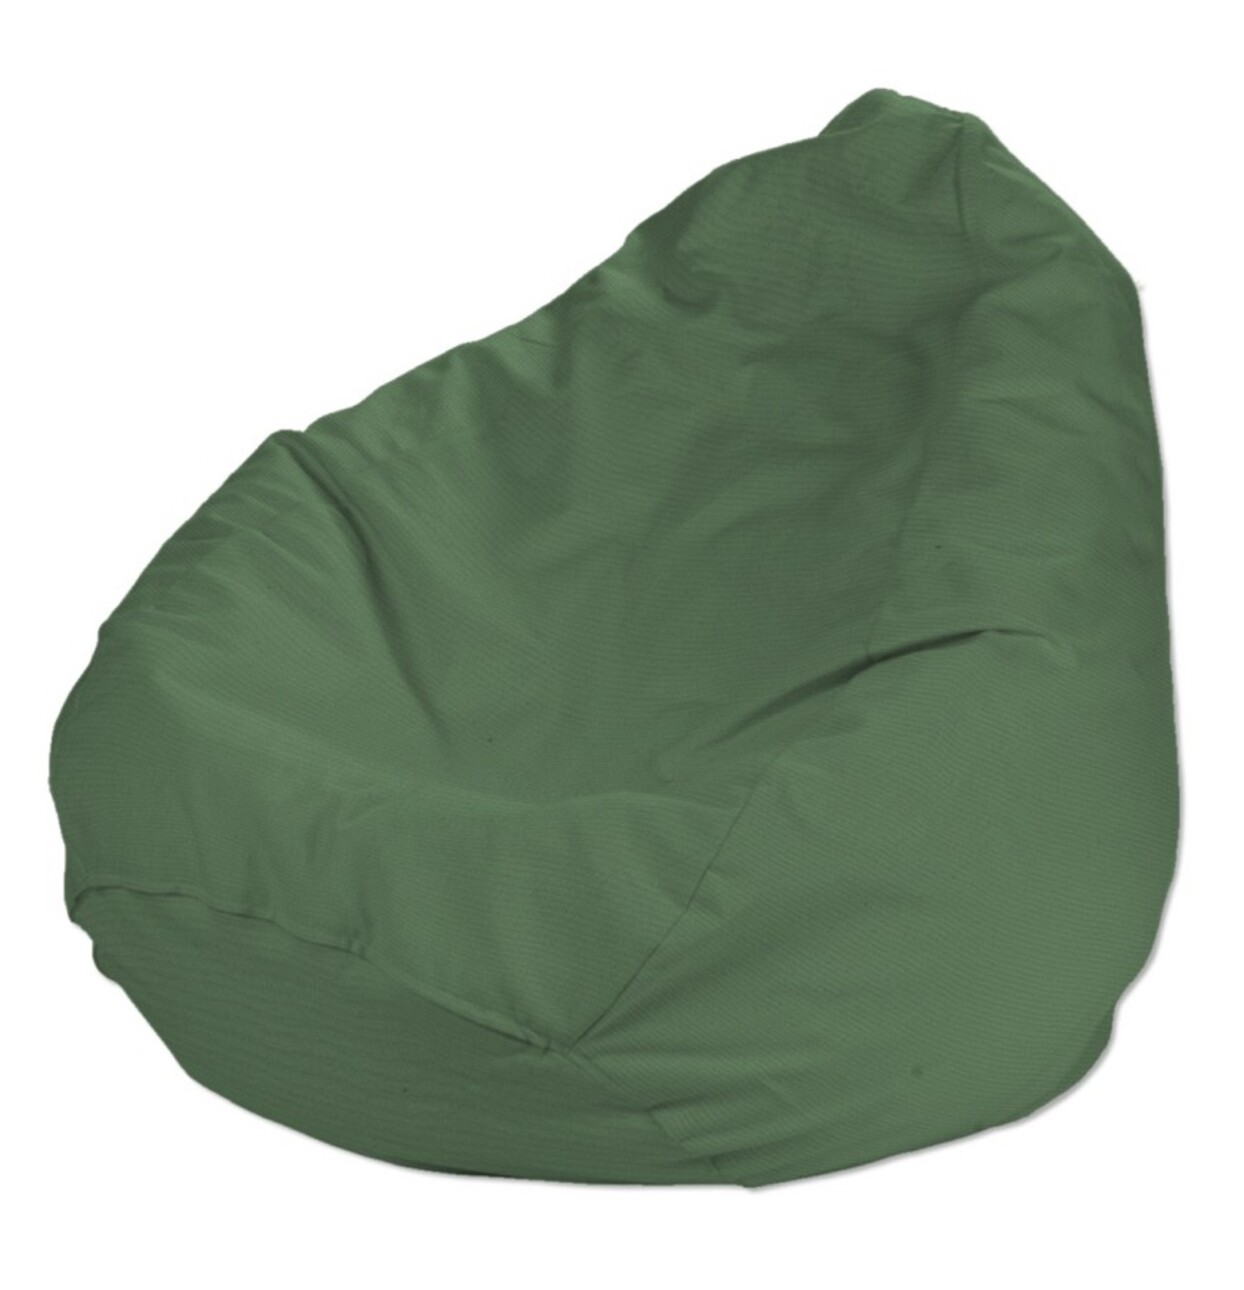 Bezug für Sitzsack, grün, Bezug für Sitzsack Ø60 x 105 cm, Loneta (133-18) günstig online kaufen